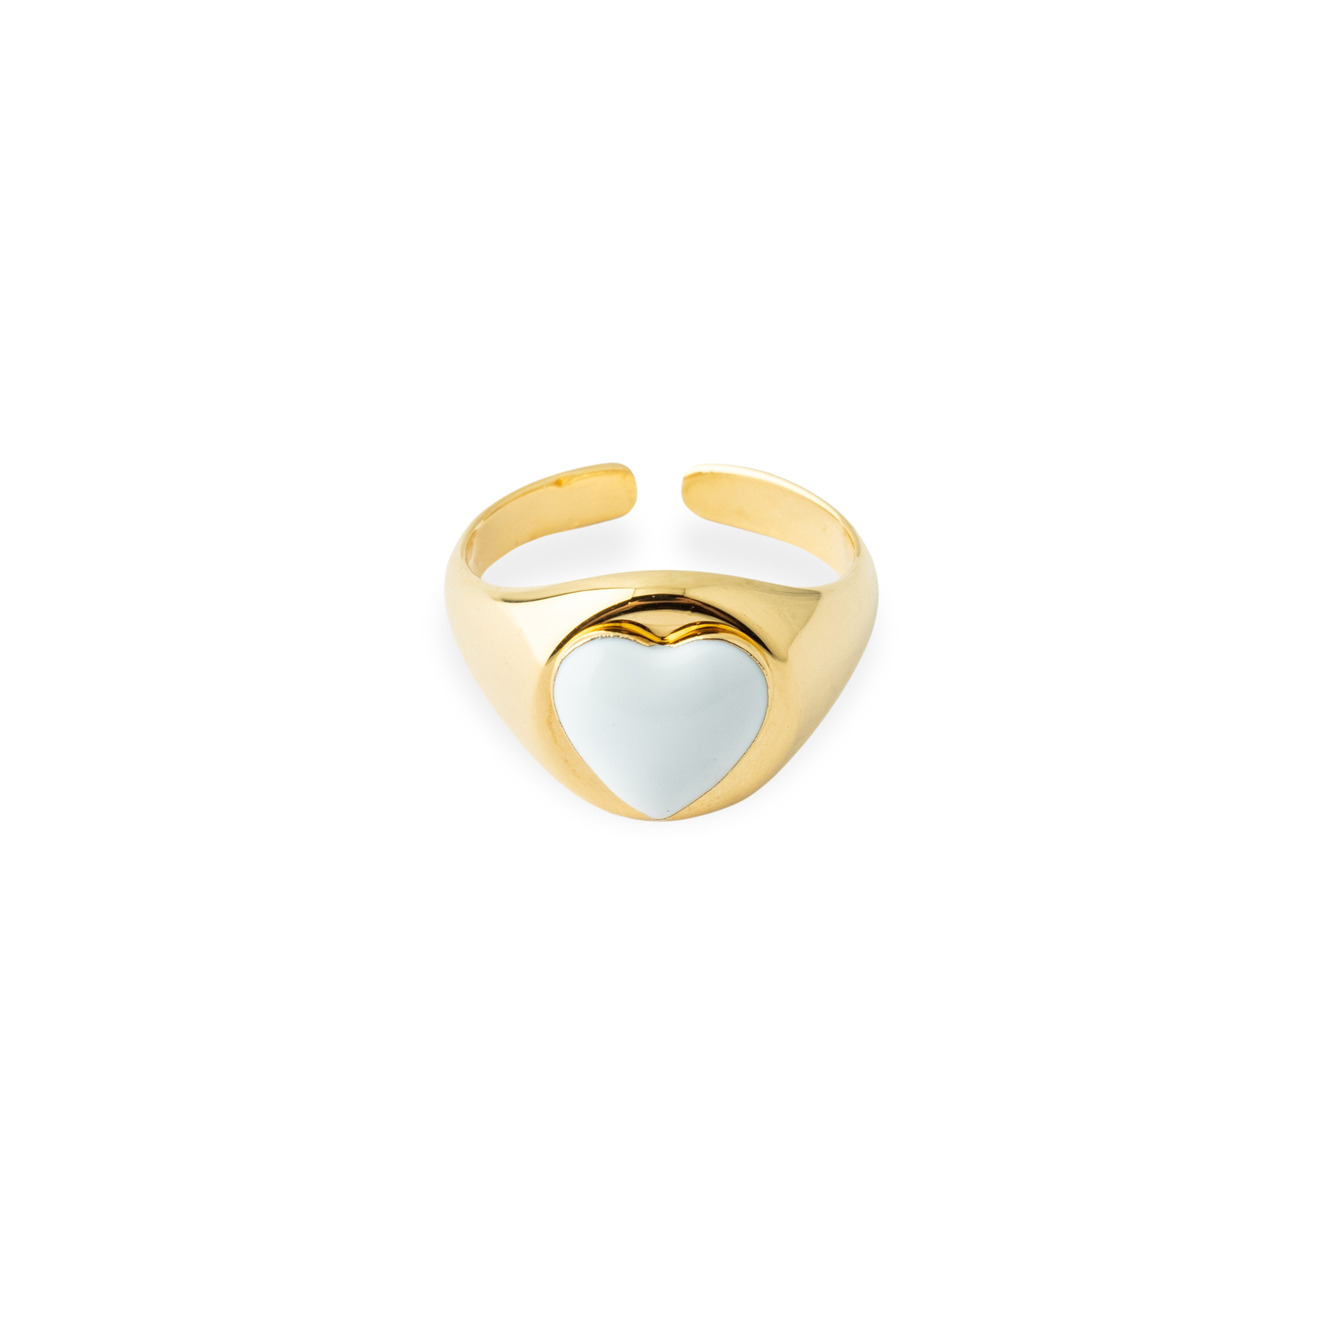 Aqua Золотистое кольцо-печатка с белым сердцем lisa smith золотистое кольцо с узором